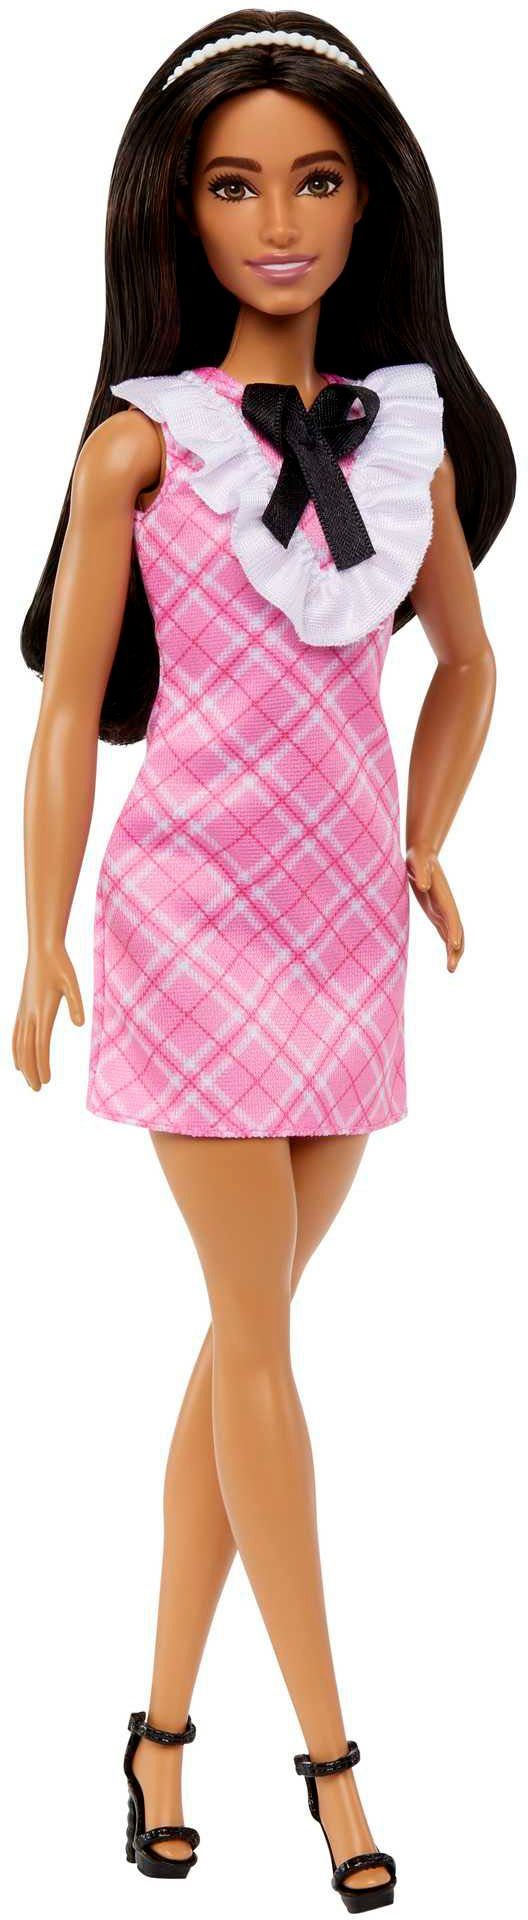 Mattel® Barbie Anziehpuppe Fashionistas mit schwarzem Haar und Karokleid